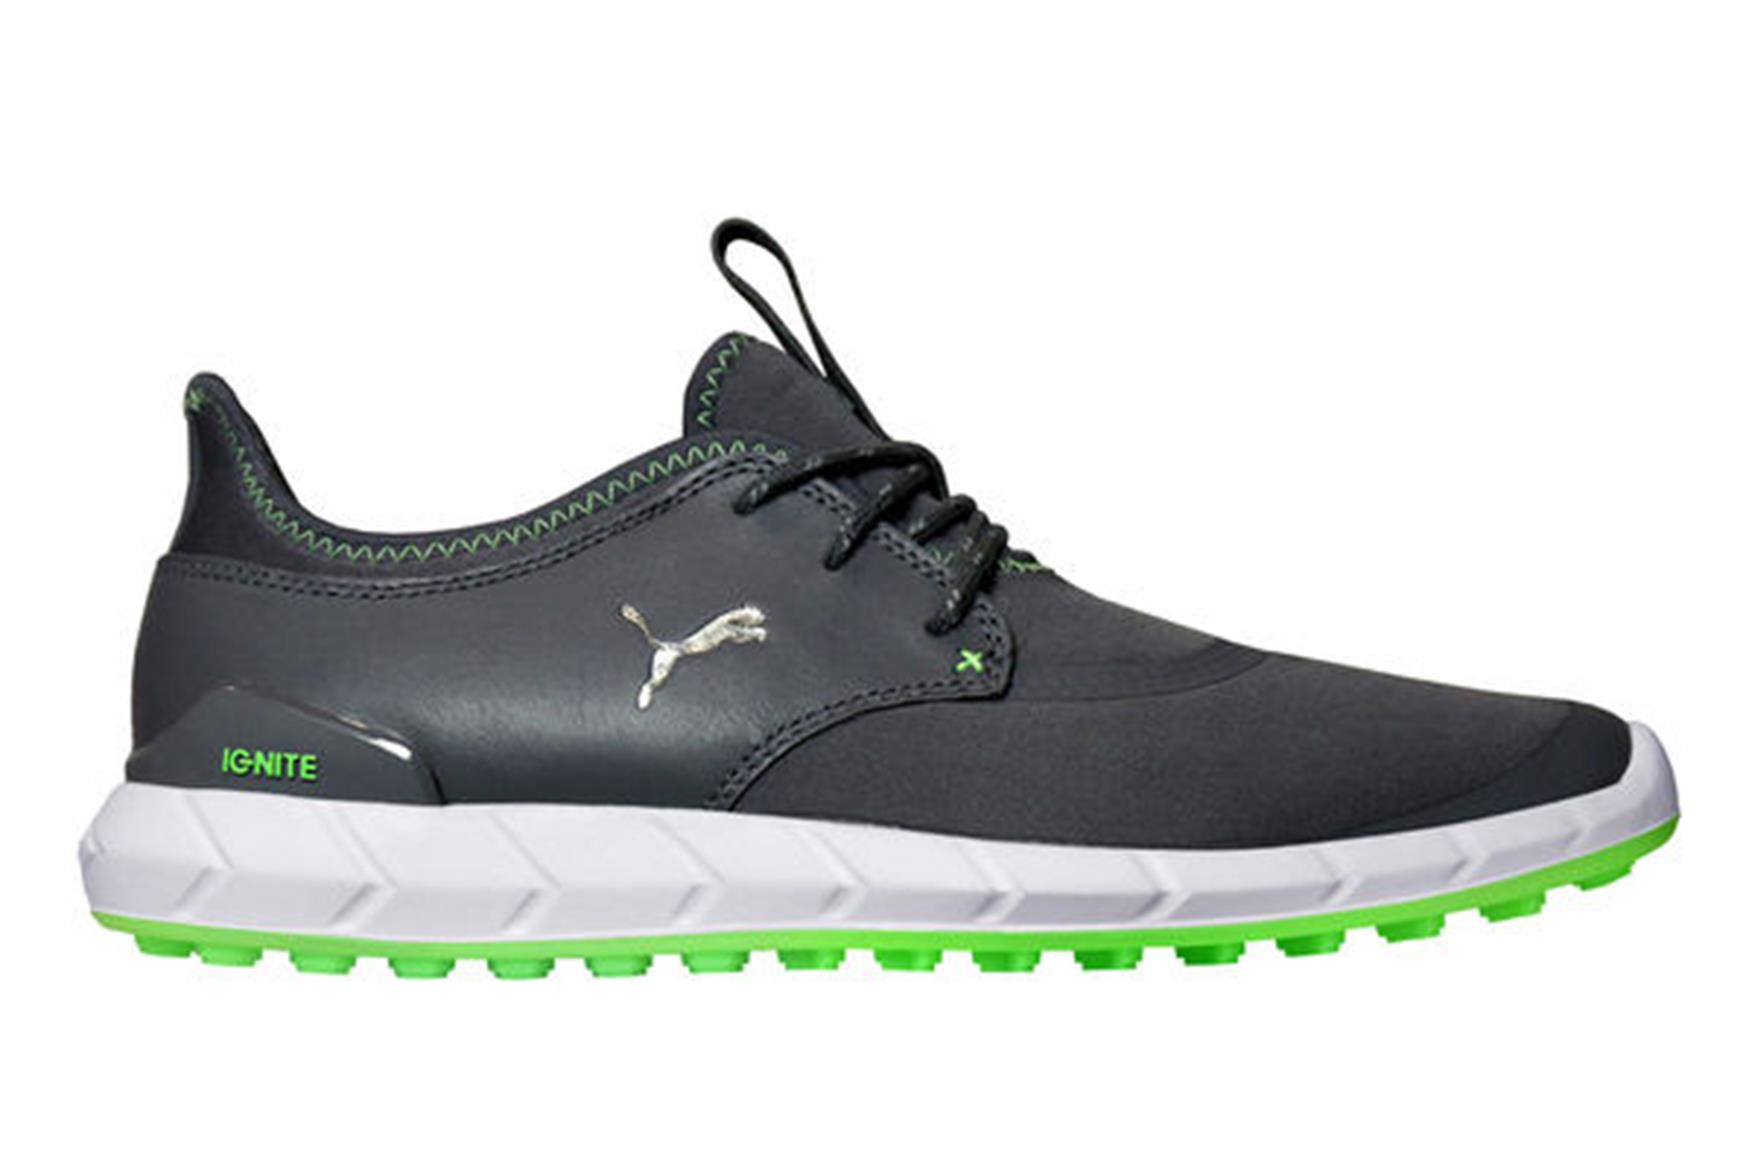 Puma Ignite Sport Golf Shoes Review 